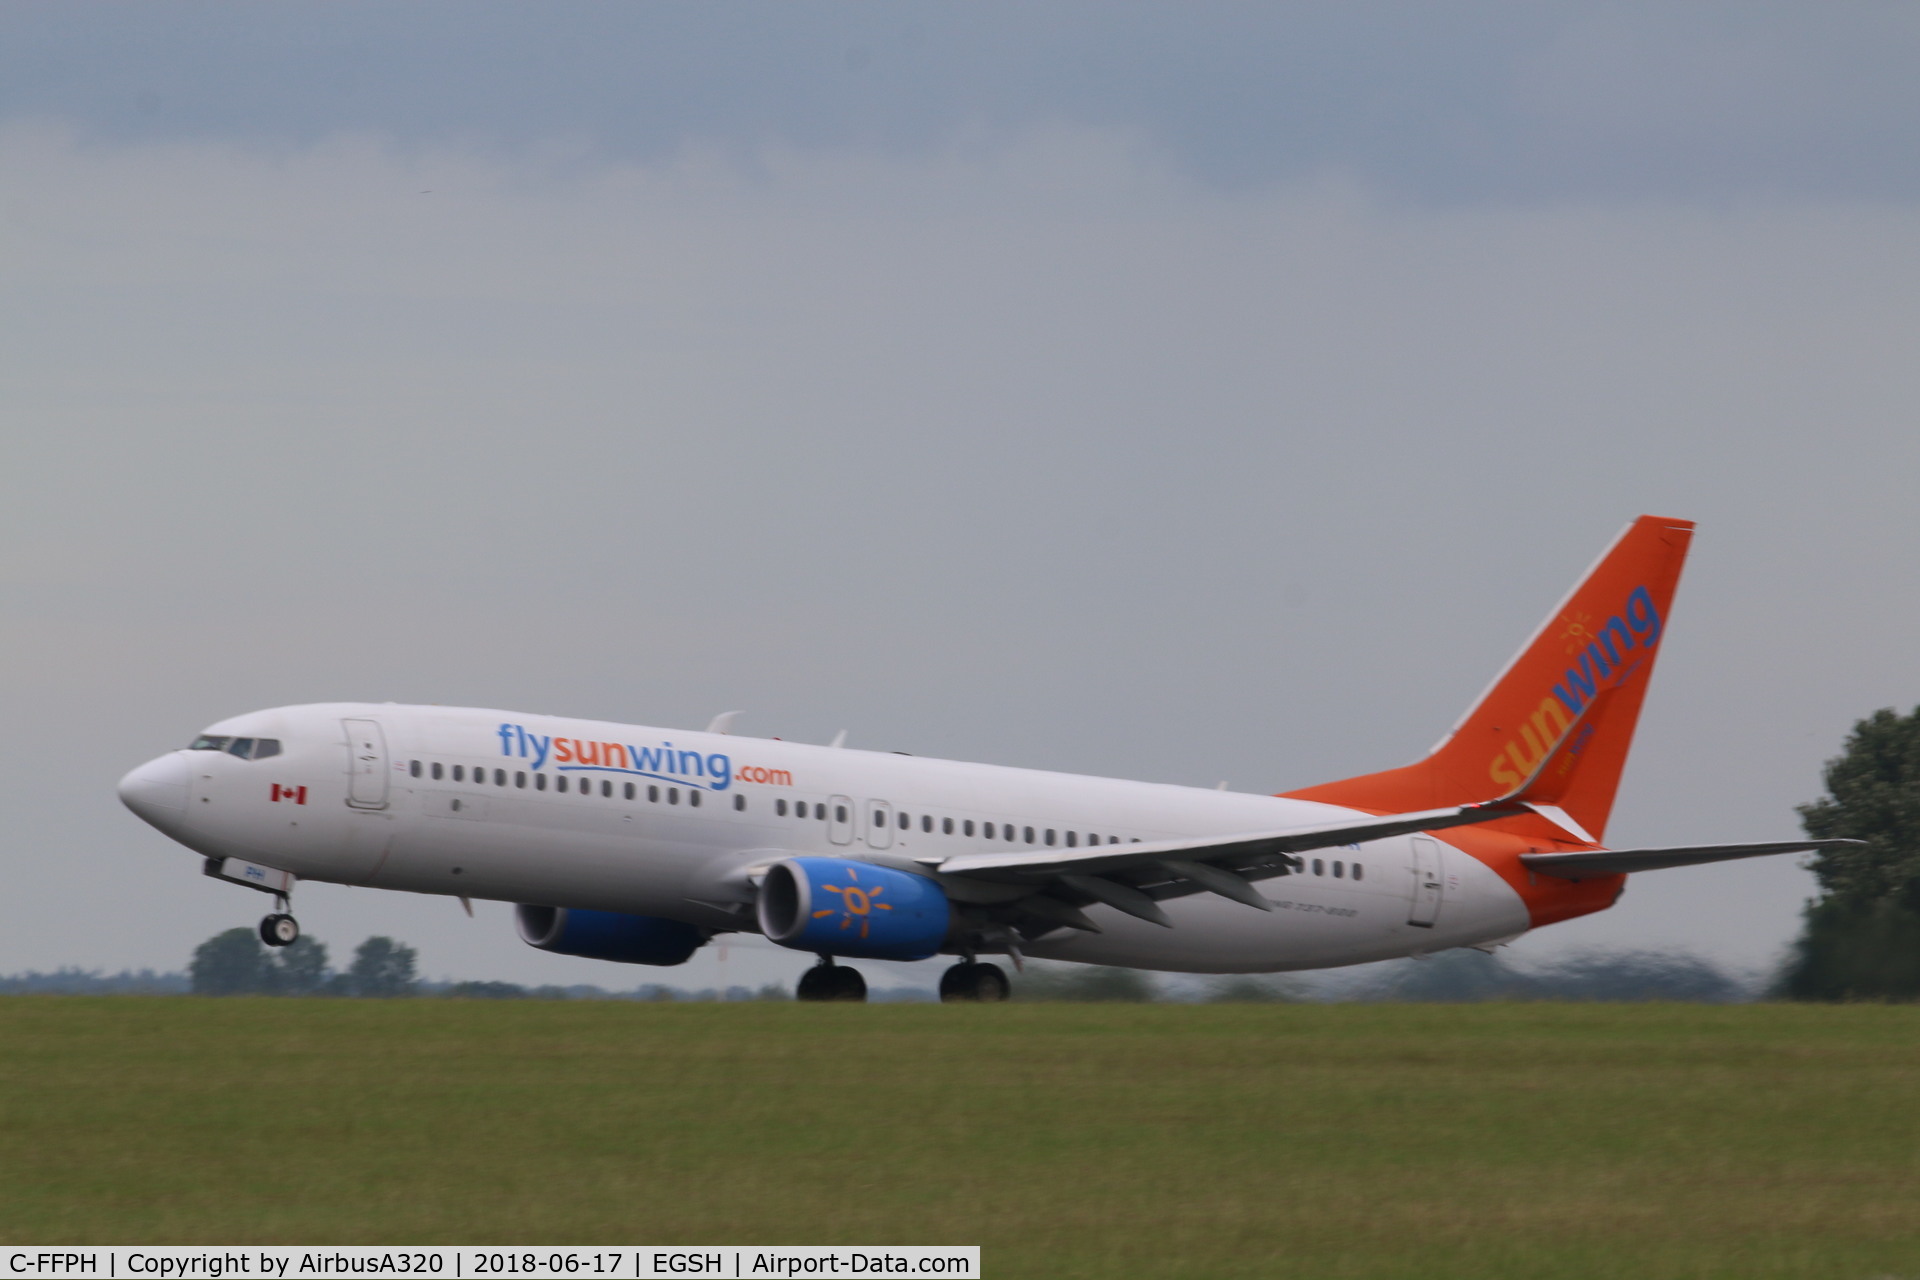 C-FFPH, 2014 Boeing 737-81D C/N 39440, Departing RWY 27 Teneriffe bound